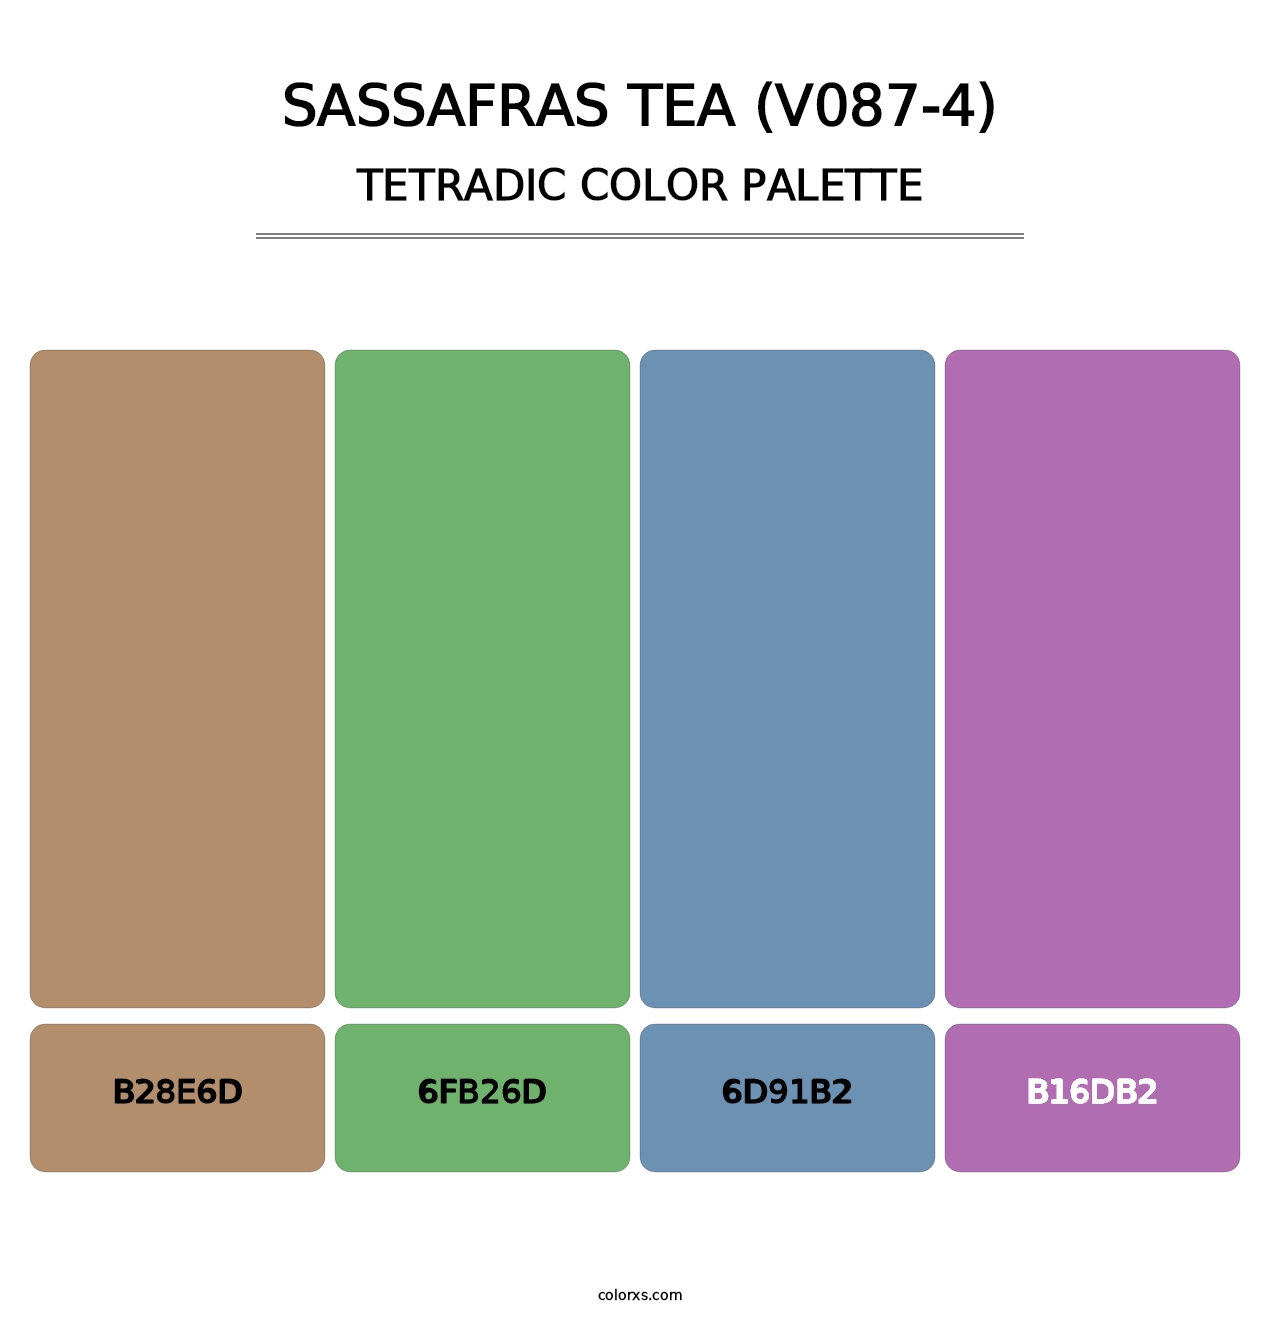 Sassafras Tea (V087-4) - Tetradic Color Palette